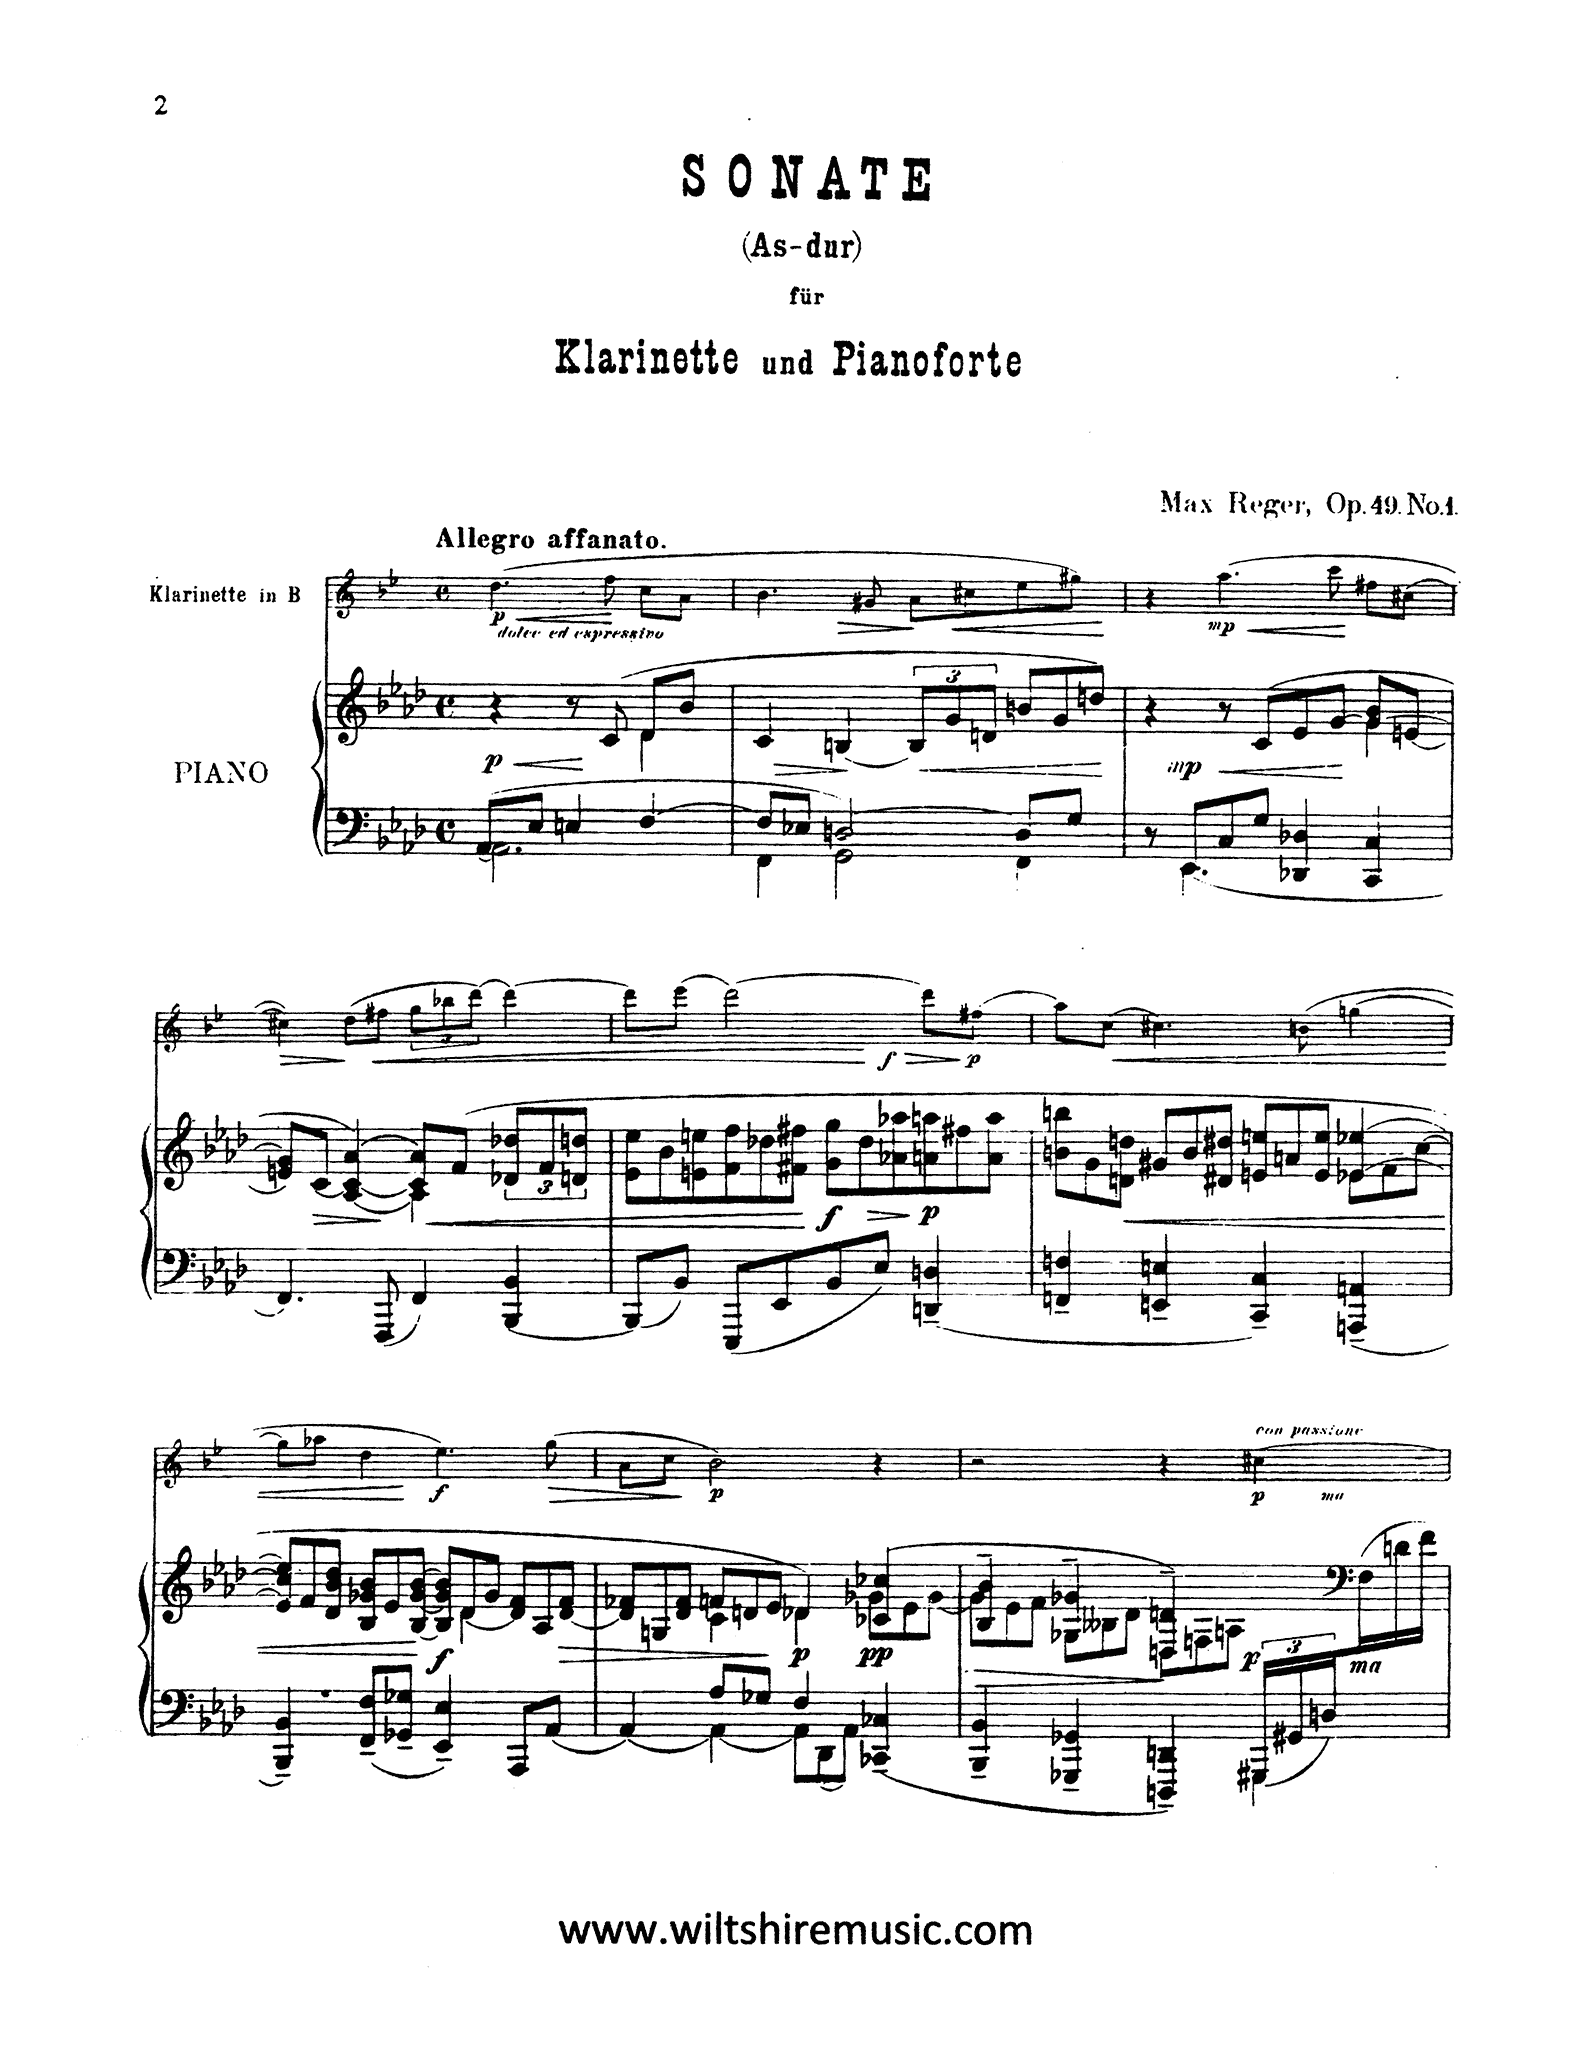 Reger Sonata in A-flat Major, Op. 49 No. 1 - Movement 1